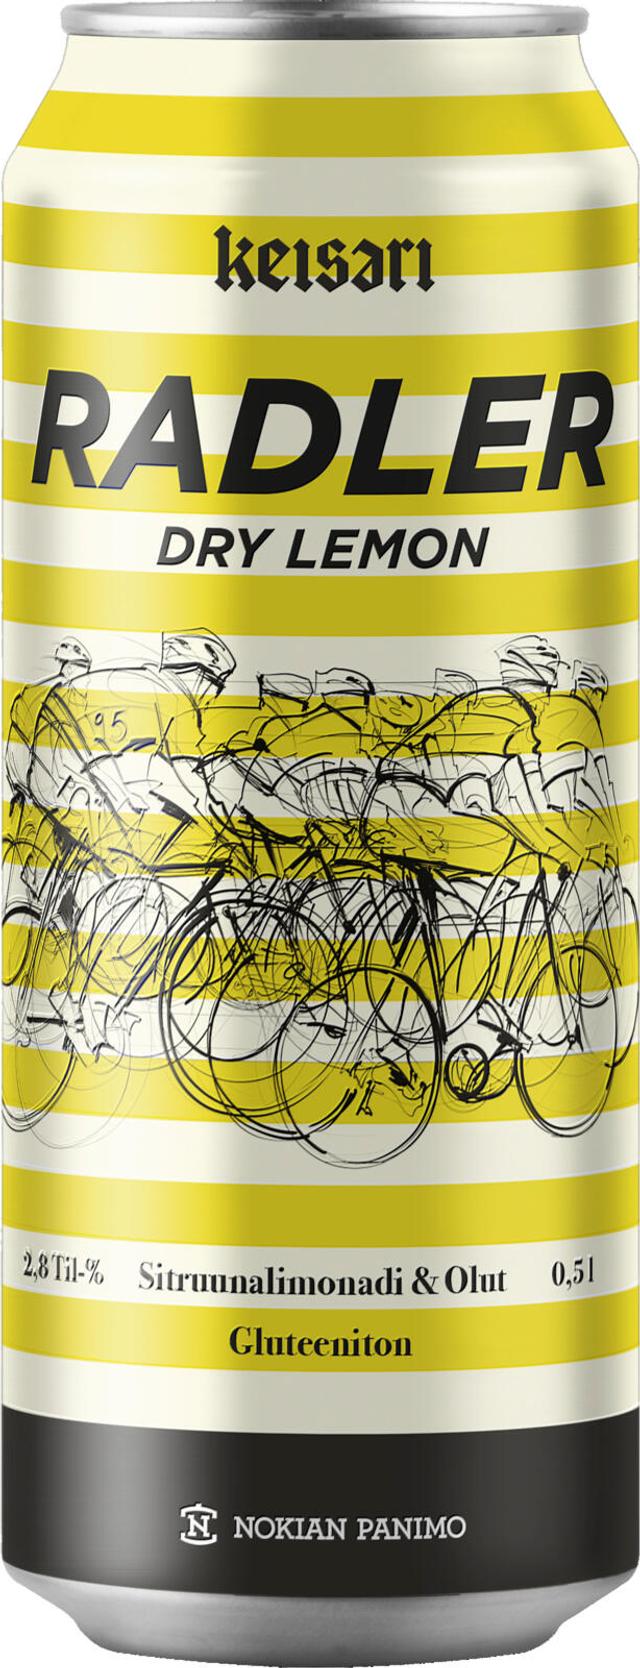 Keisari Dry Radler Lemon 2,8% 0,5l